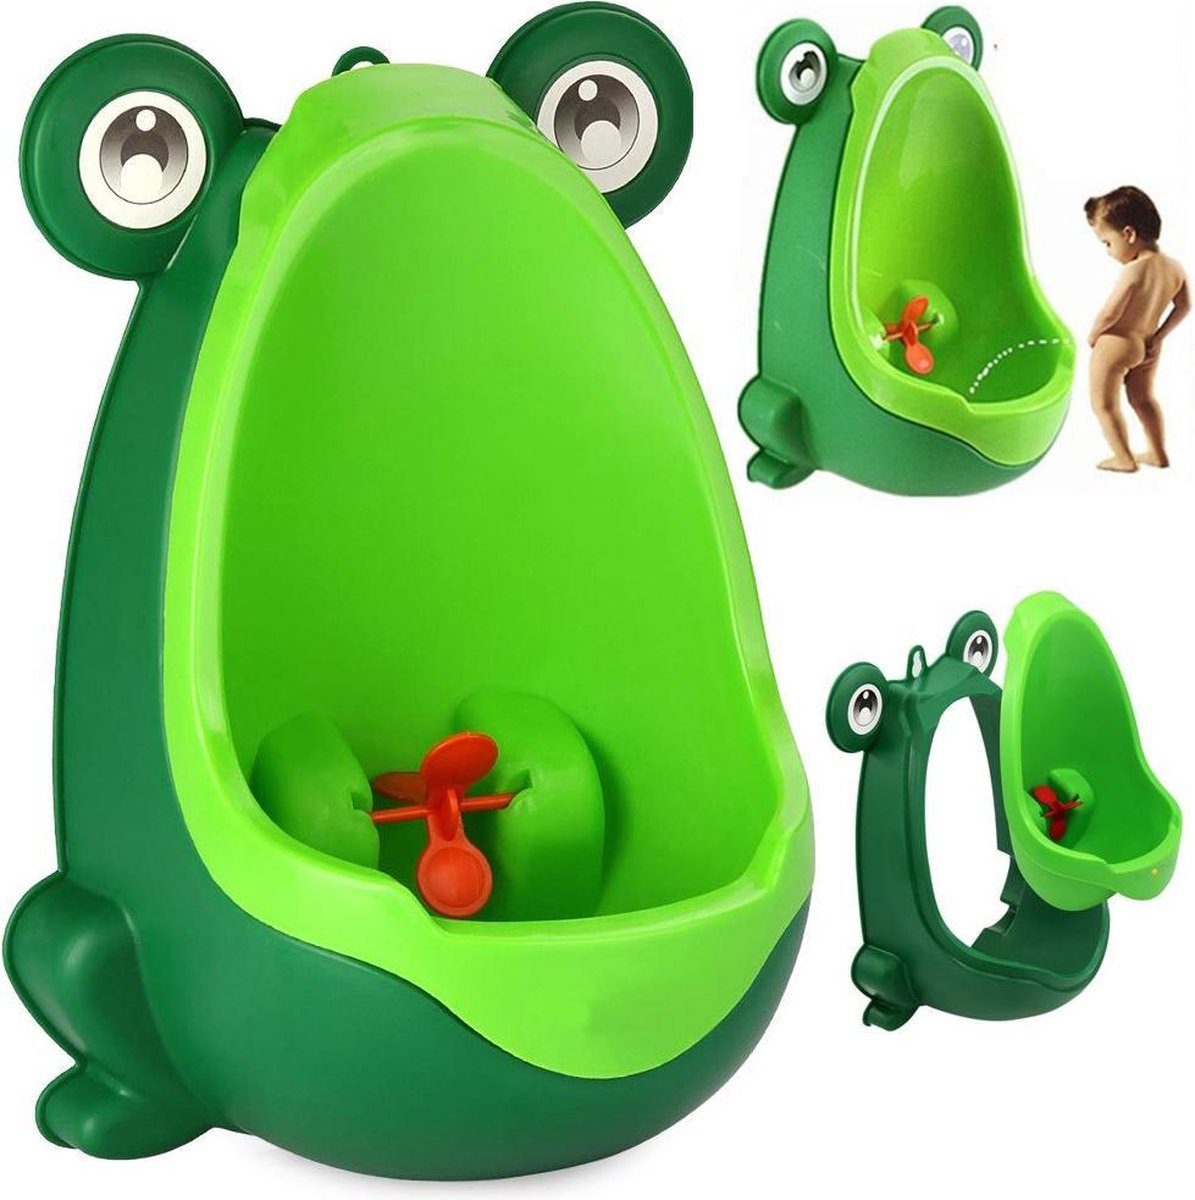 BLEU Urinoir Enfant Urinoir Garçons portable pot Toilette pisser formateur motif grenouille mignonne apprentissage de la propreté des toilettes bébé avec toilette debout 